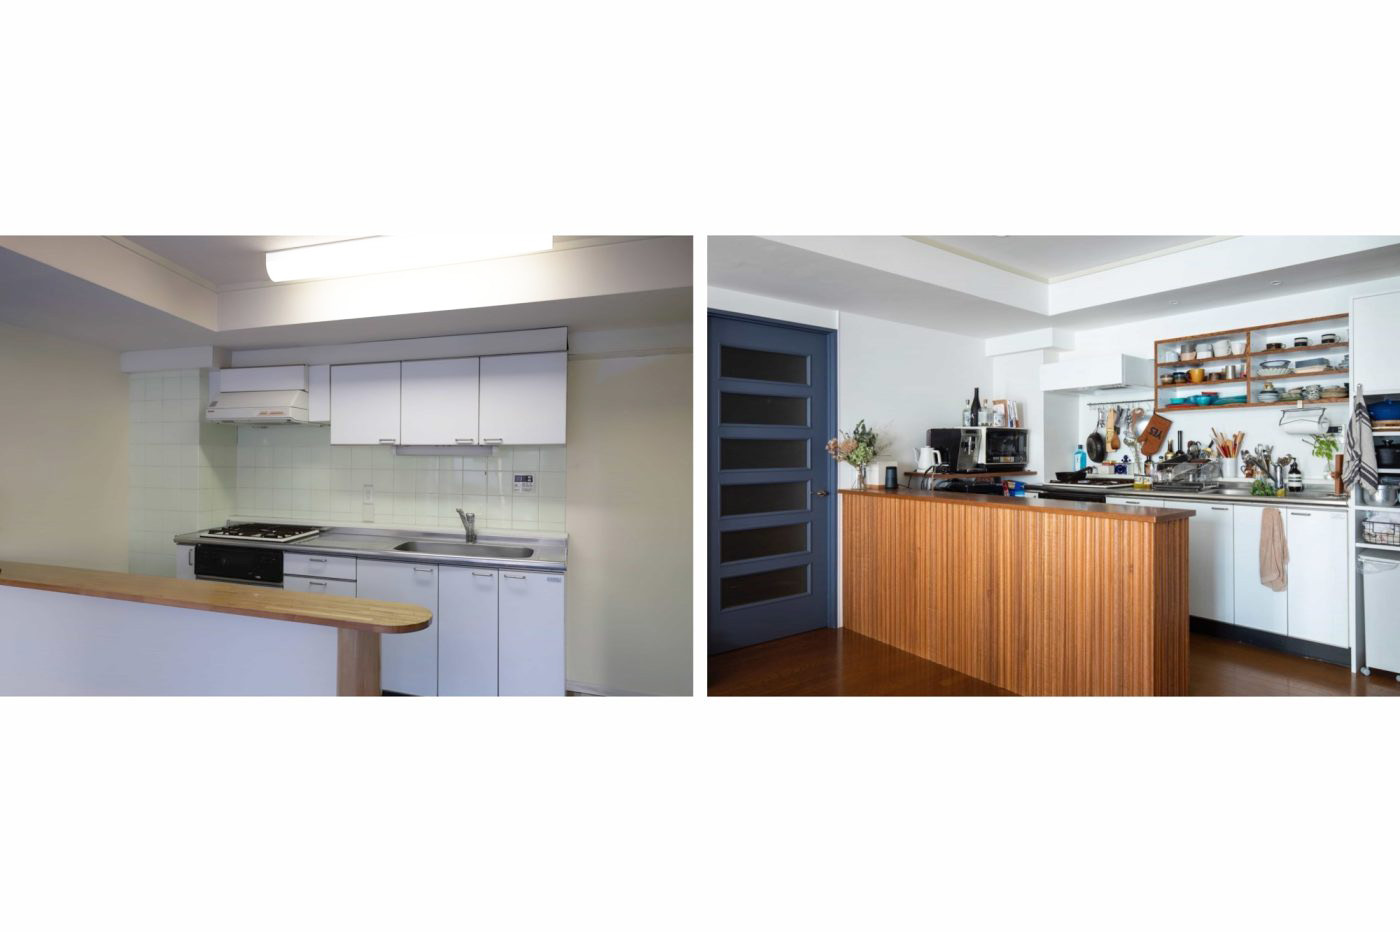 既存キッチンの配置を変えることなく、機器や素材を刷新して自分らしさの溢れるキッチン空間に。